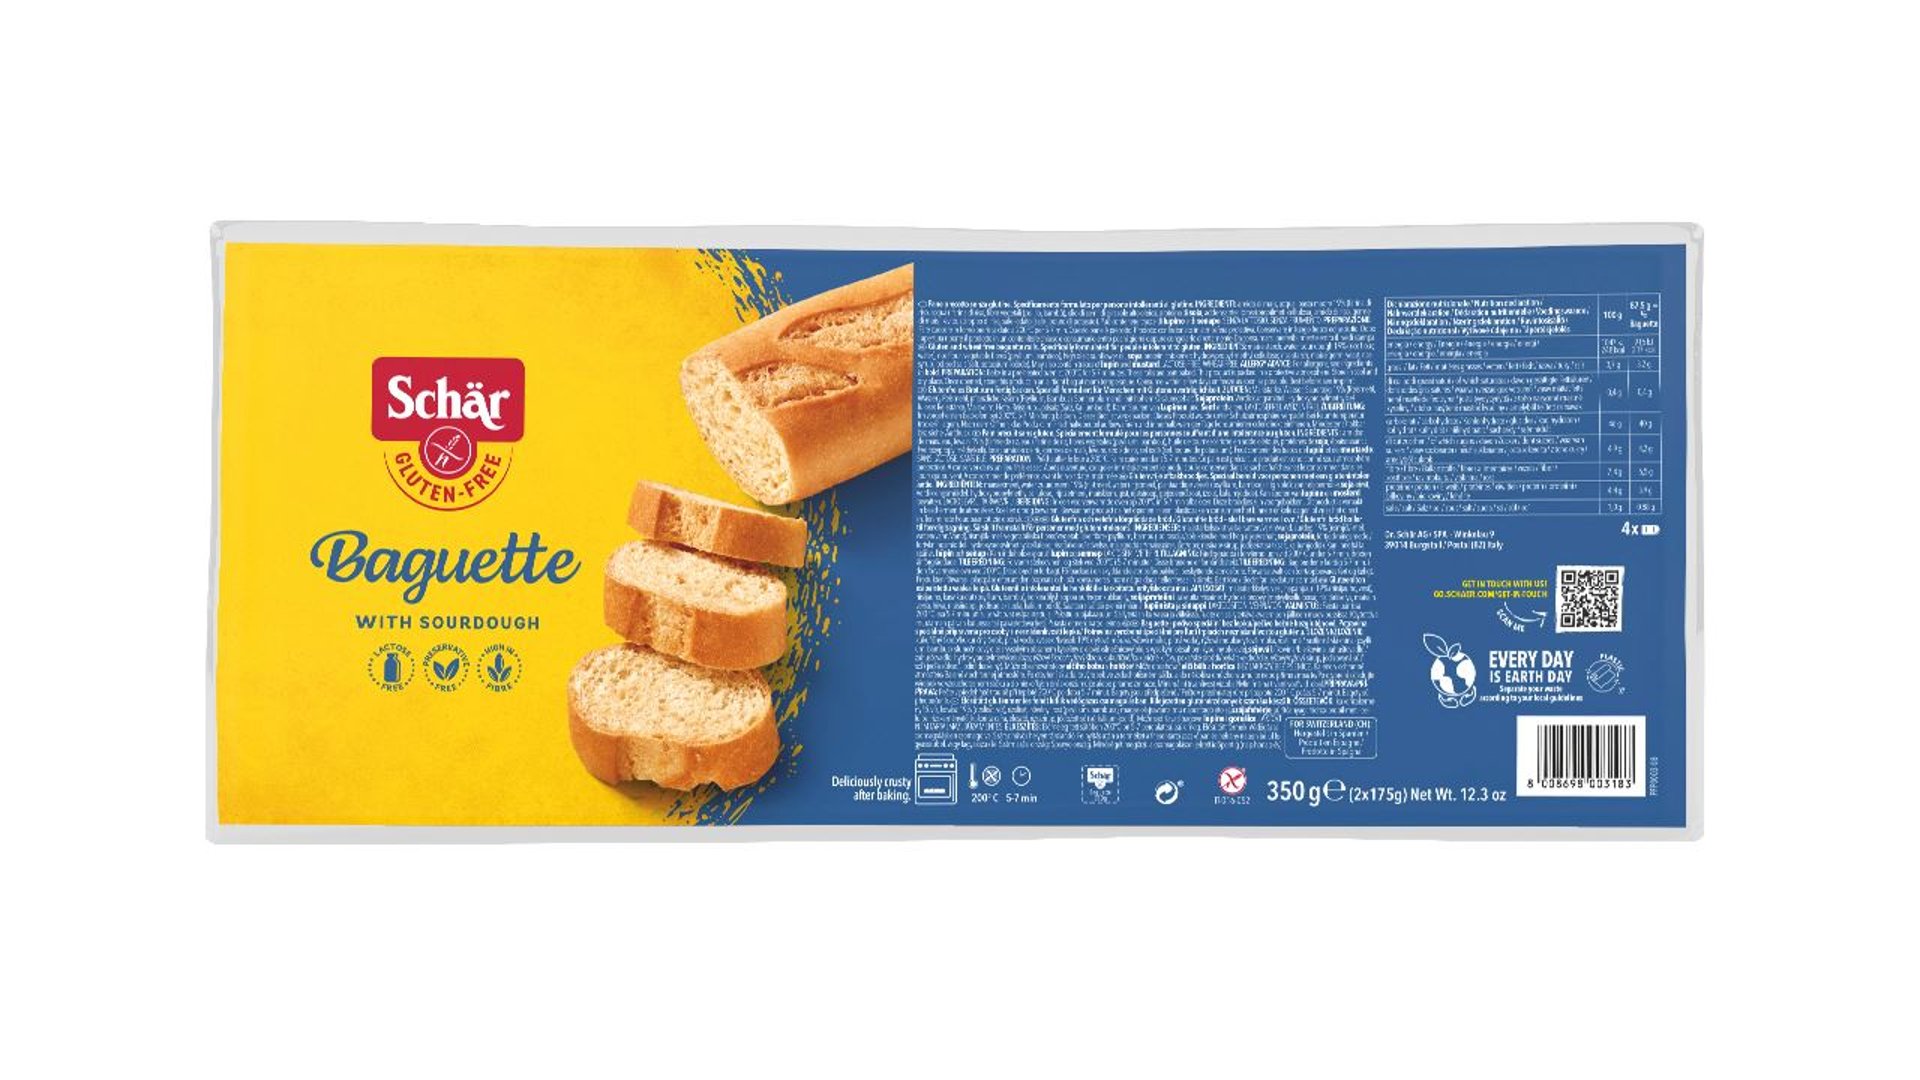 Schär - Baguette glutenfrei, 2 Stück à 175 g - 350 g Packung